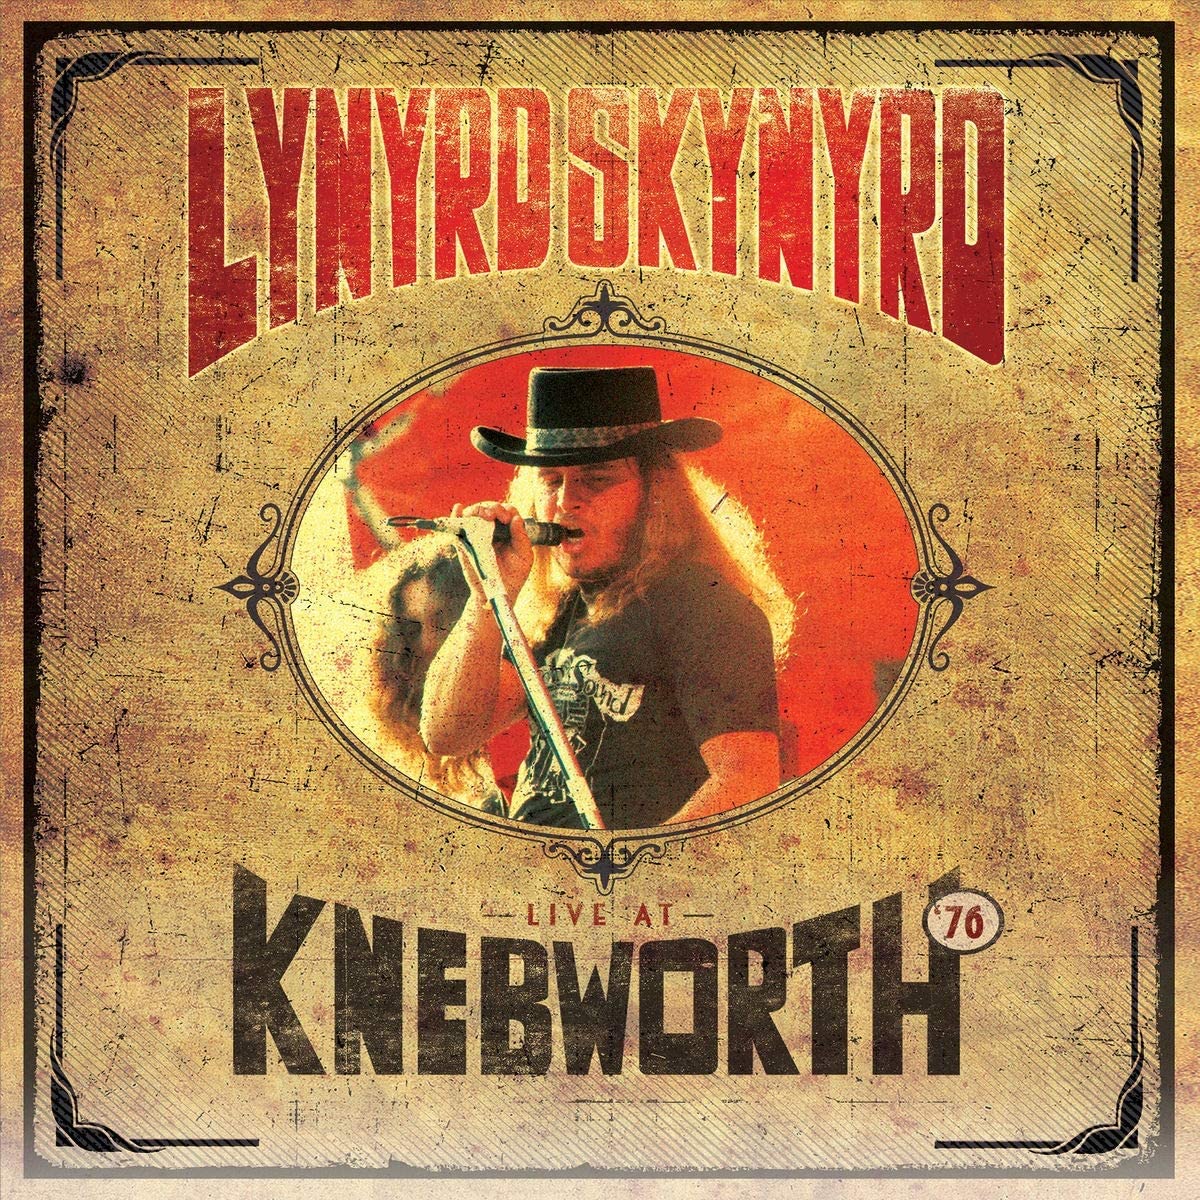 Lynyrd Skynyrd - Live At Knebworth '76 - CD/BluRay